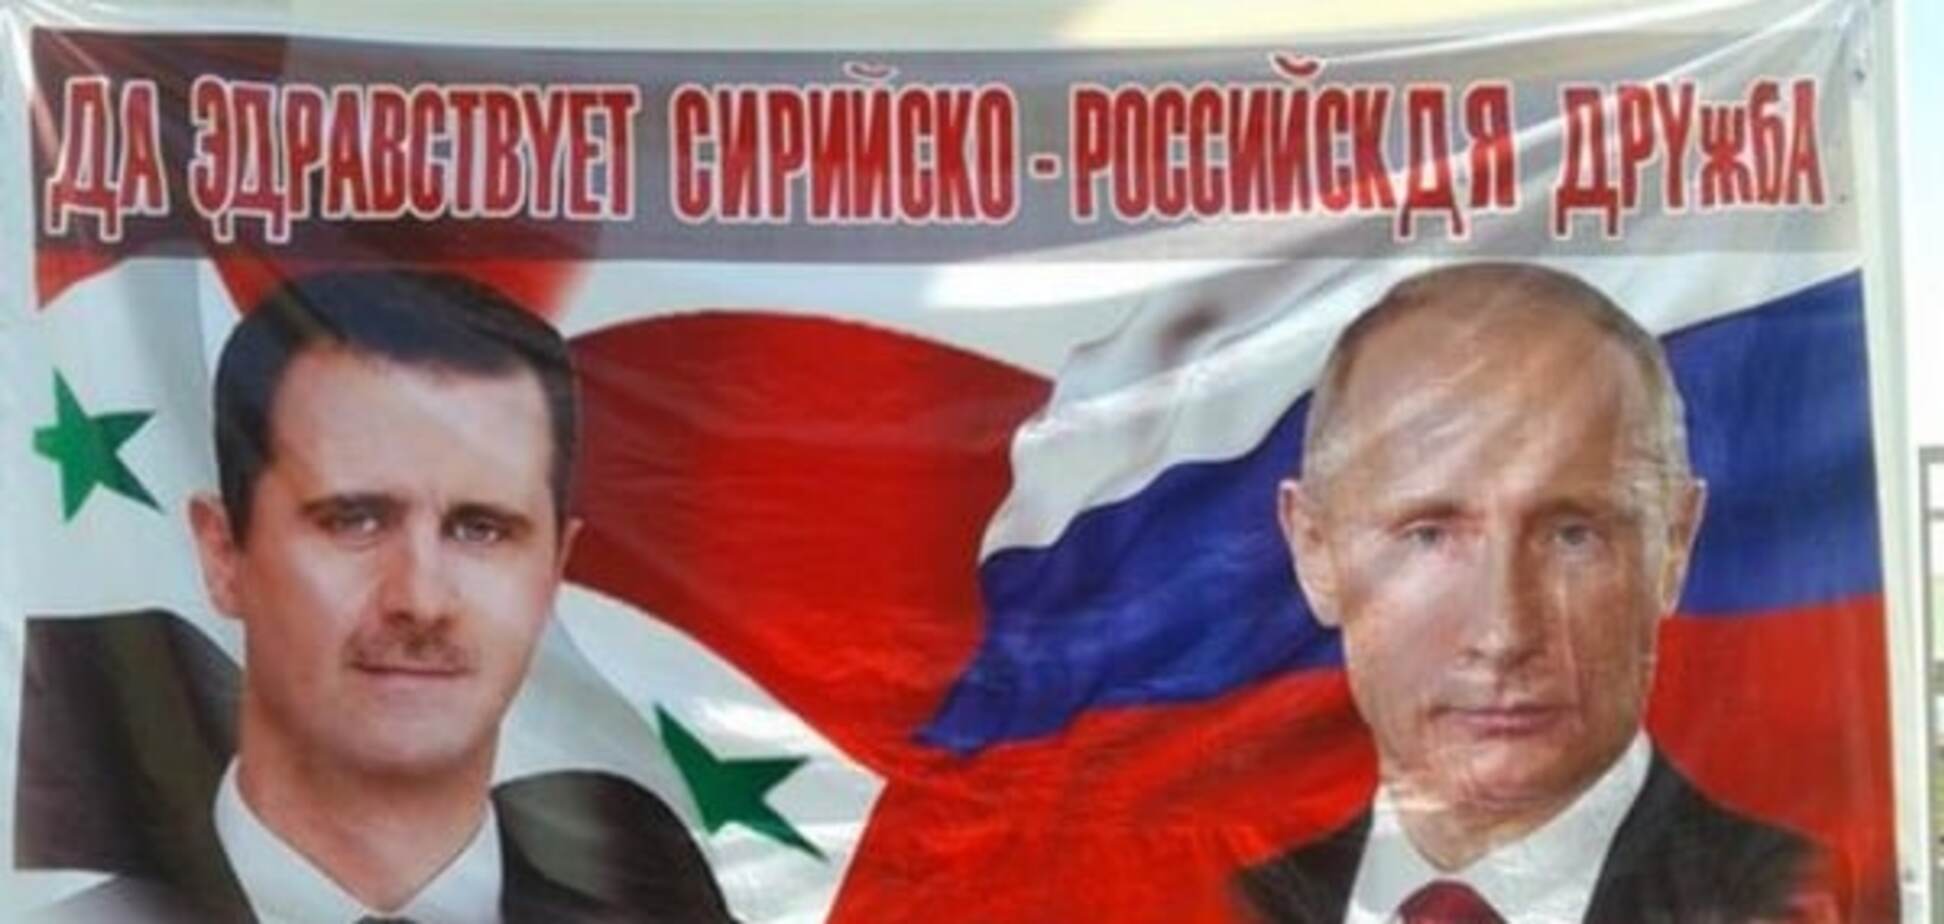 Россия - щедрая душа: посол рассказал о безвозмездных поставках оружия в Сирию